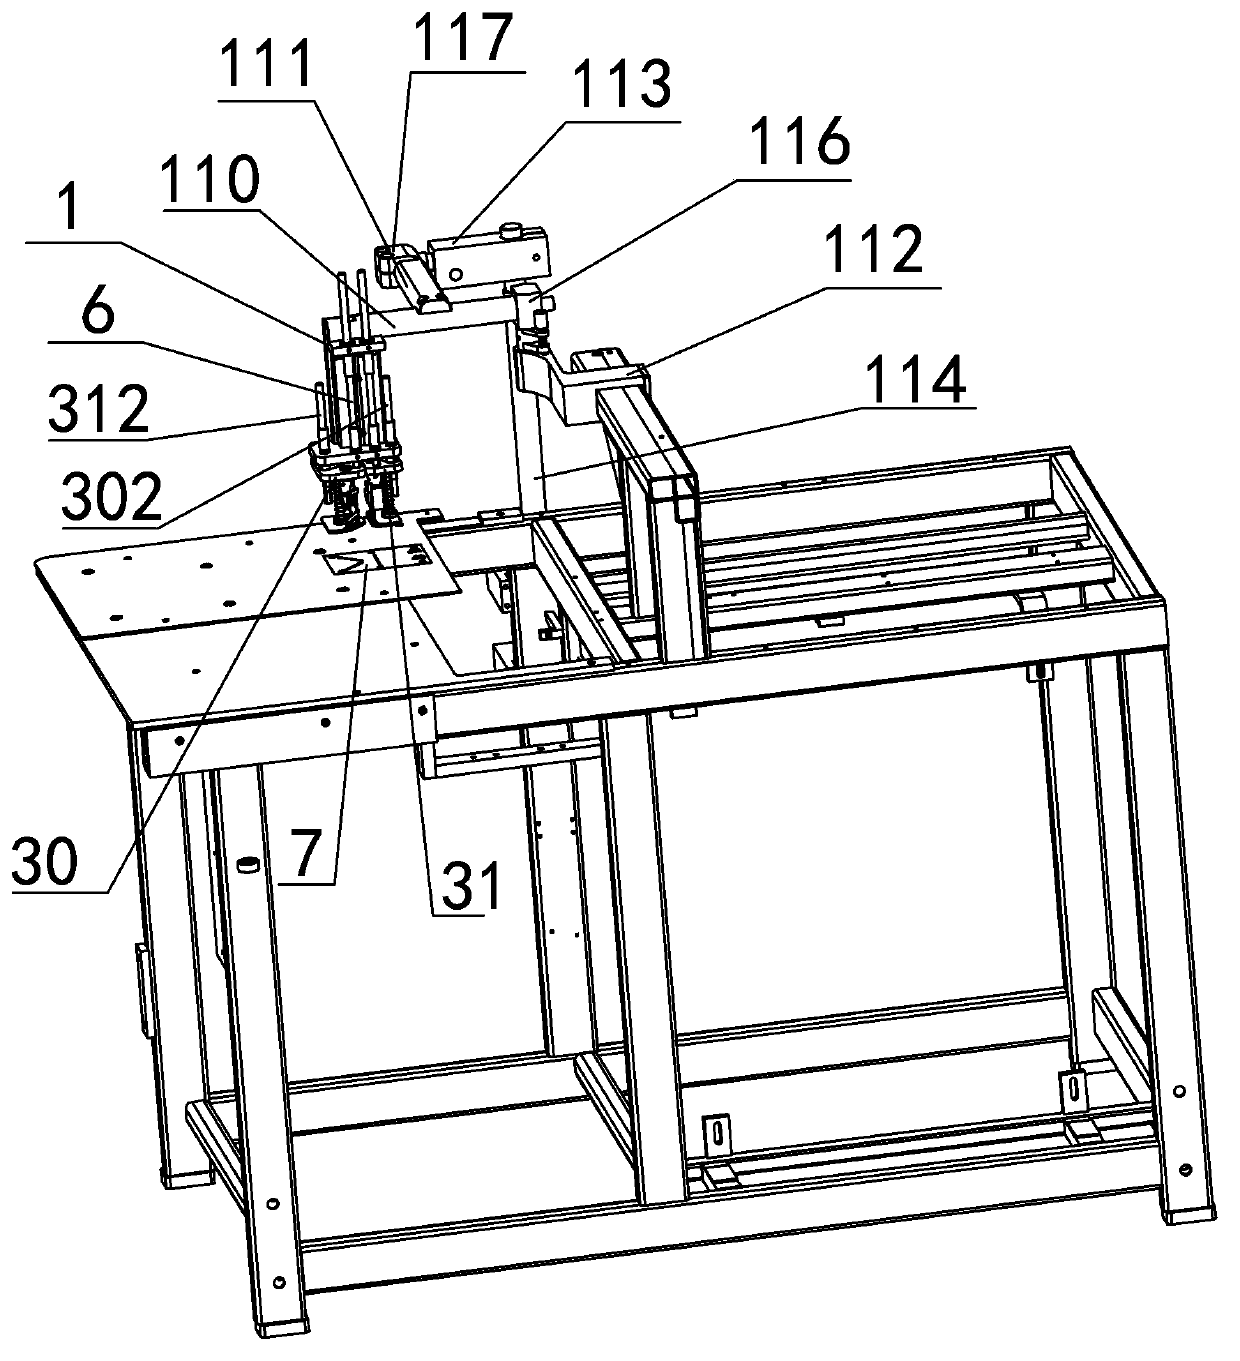 Sewing machine cutter device